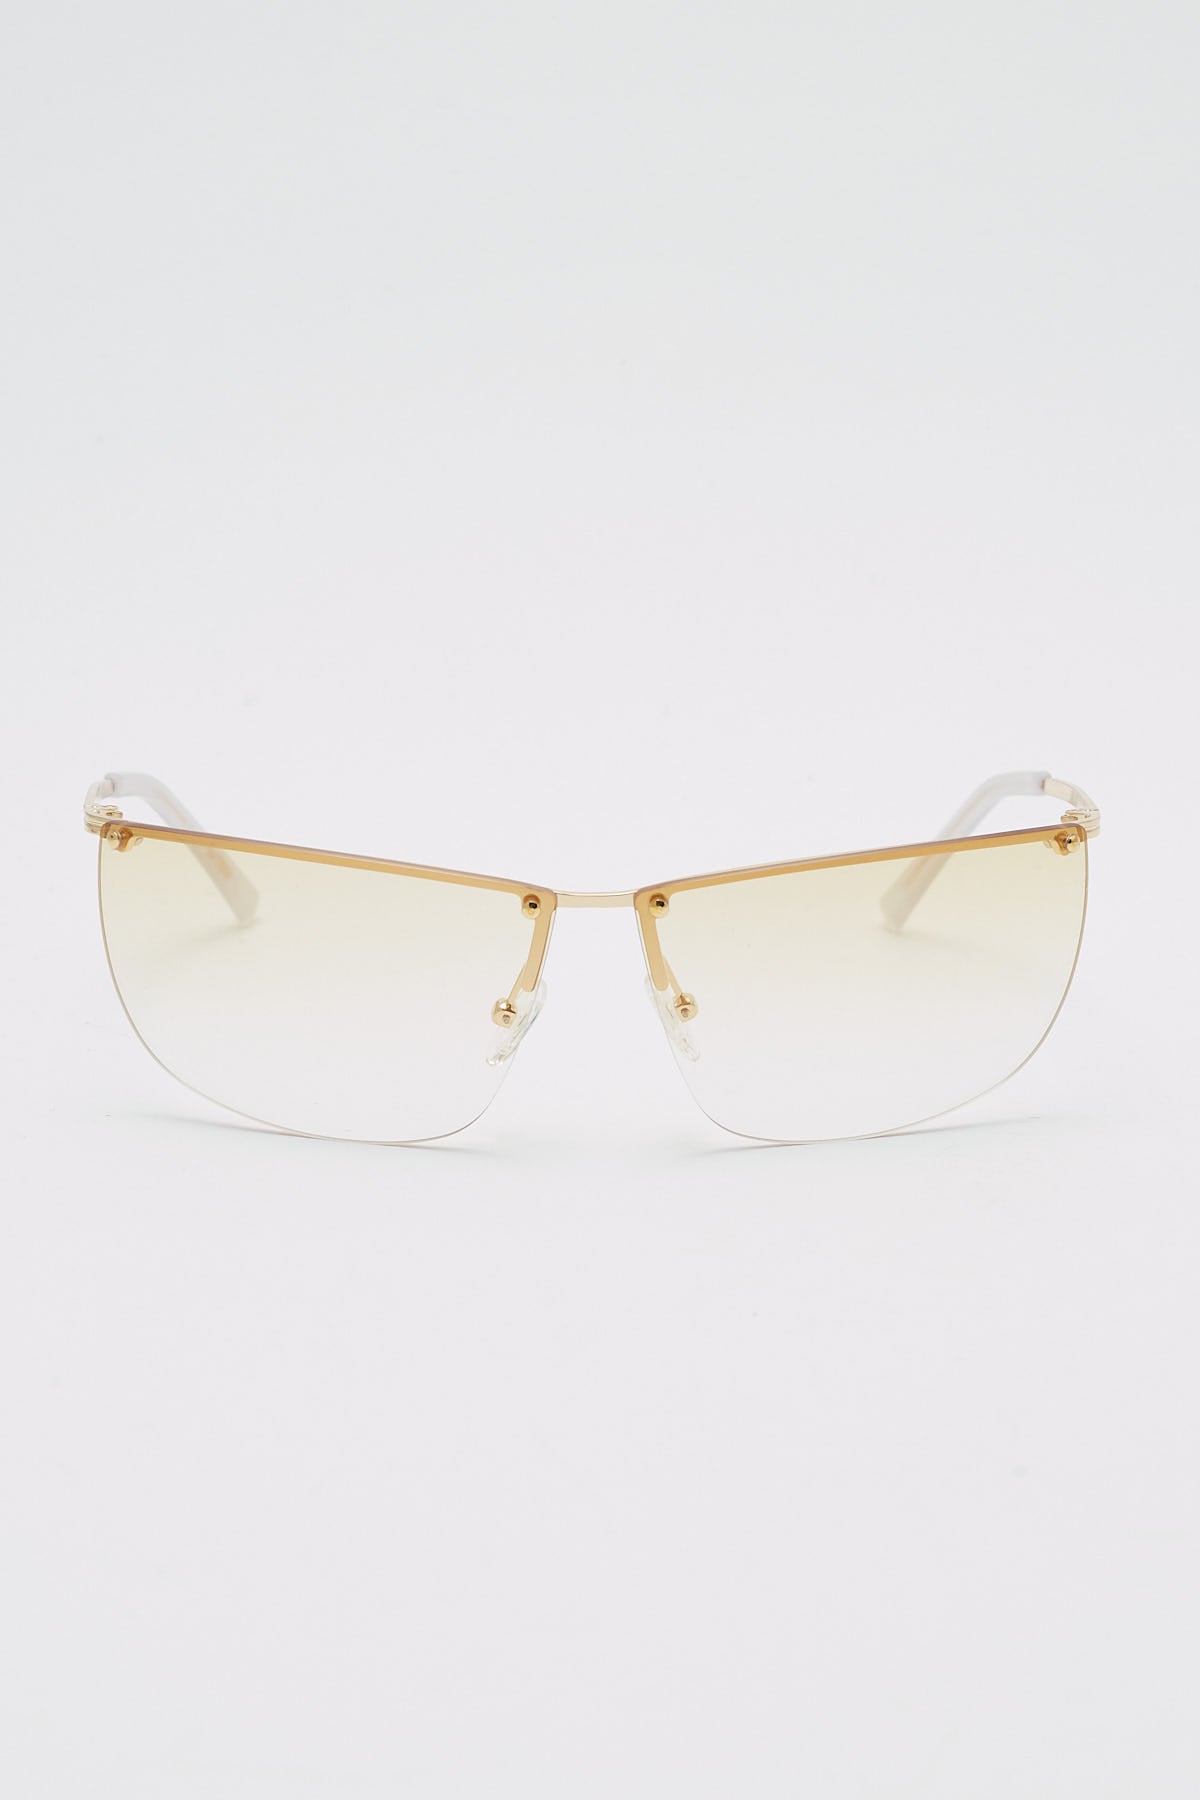 Le Specs Y2OK Gold